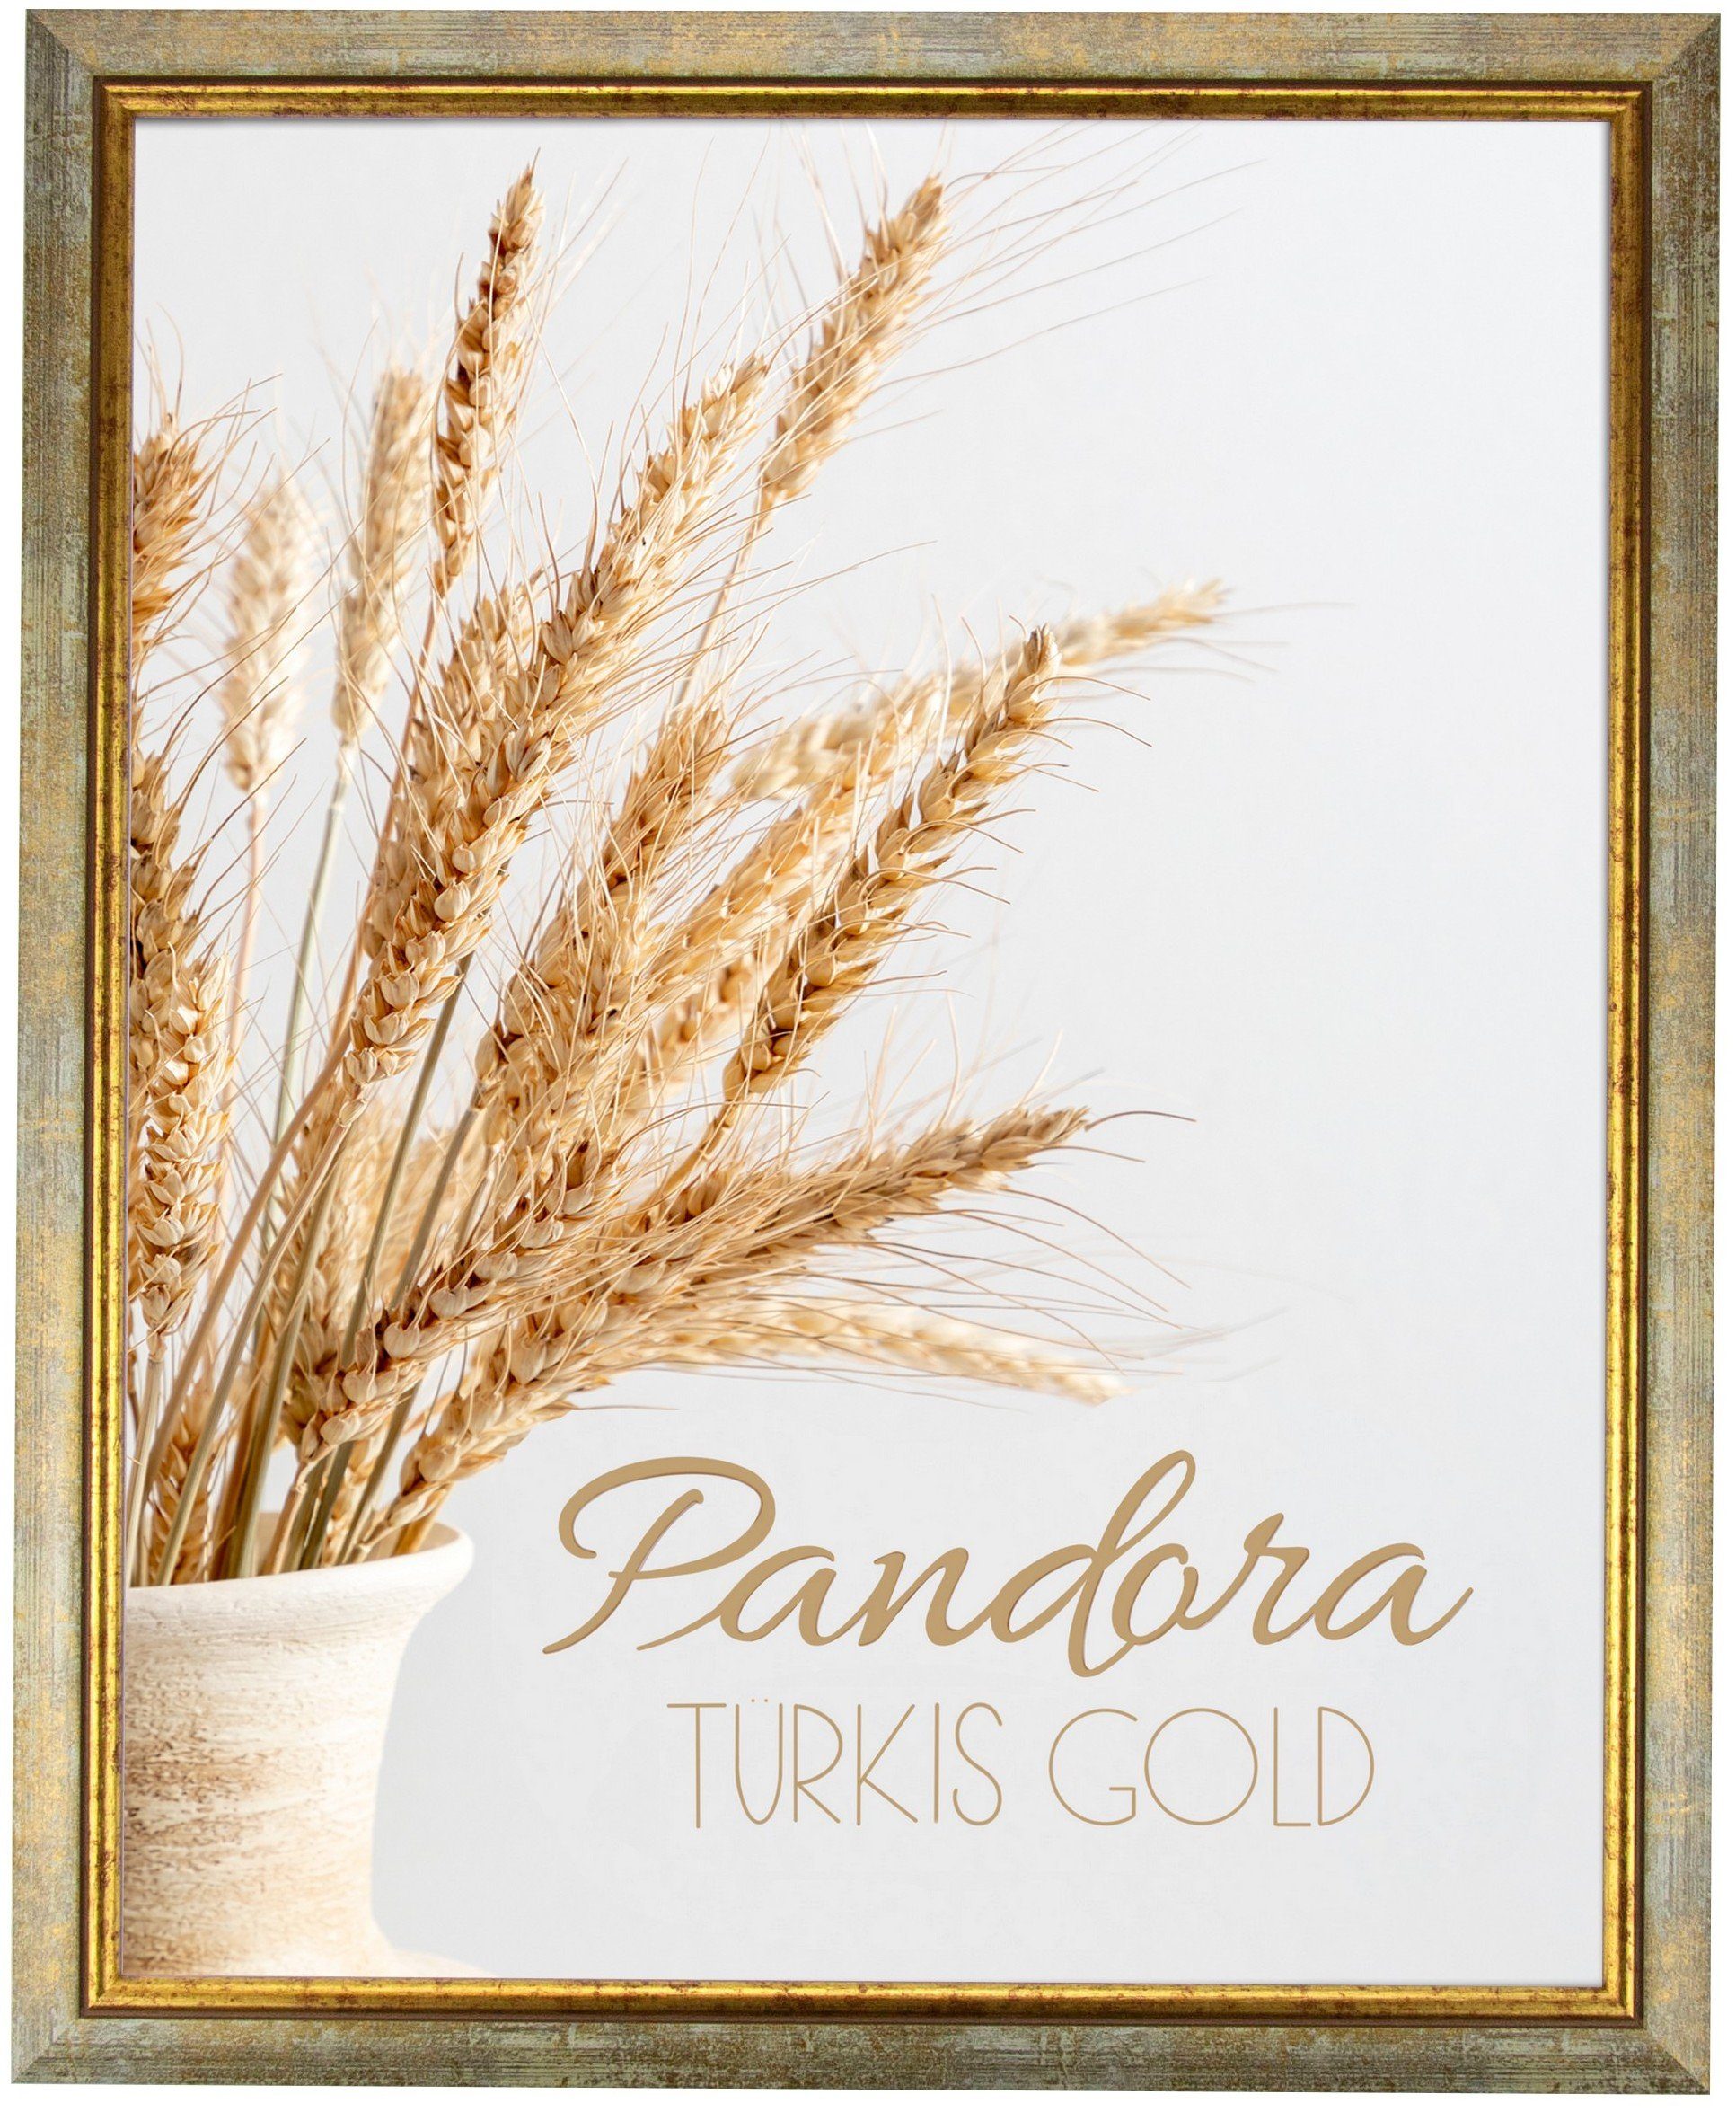 myposterframe Einzelrahmen Bilderrahmen Aged Vintage Pandora, (1 Stück), 21x26 cm, Türkis Gold, Echtholz